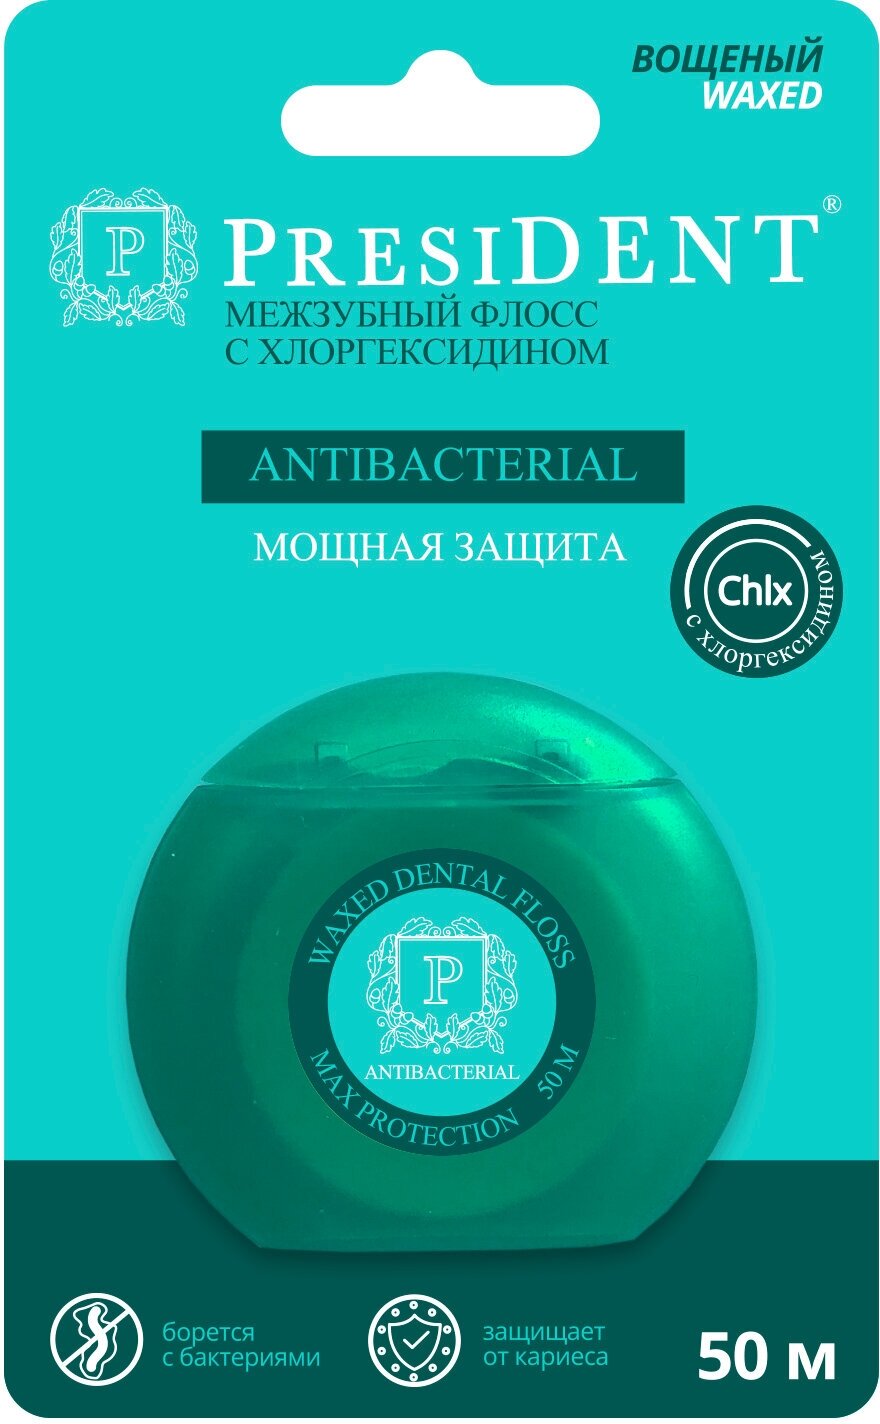 Зубная нить с хлоргексидином PRESIDENT Antibacterial, 50 м